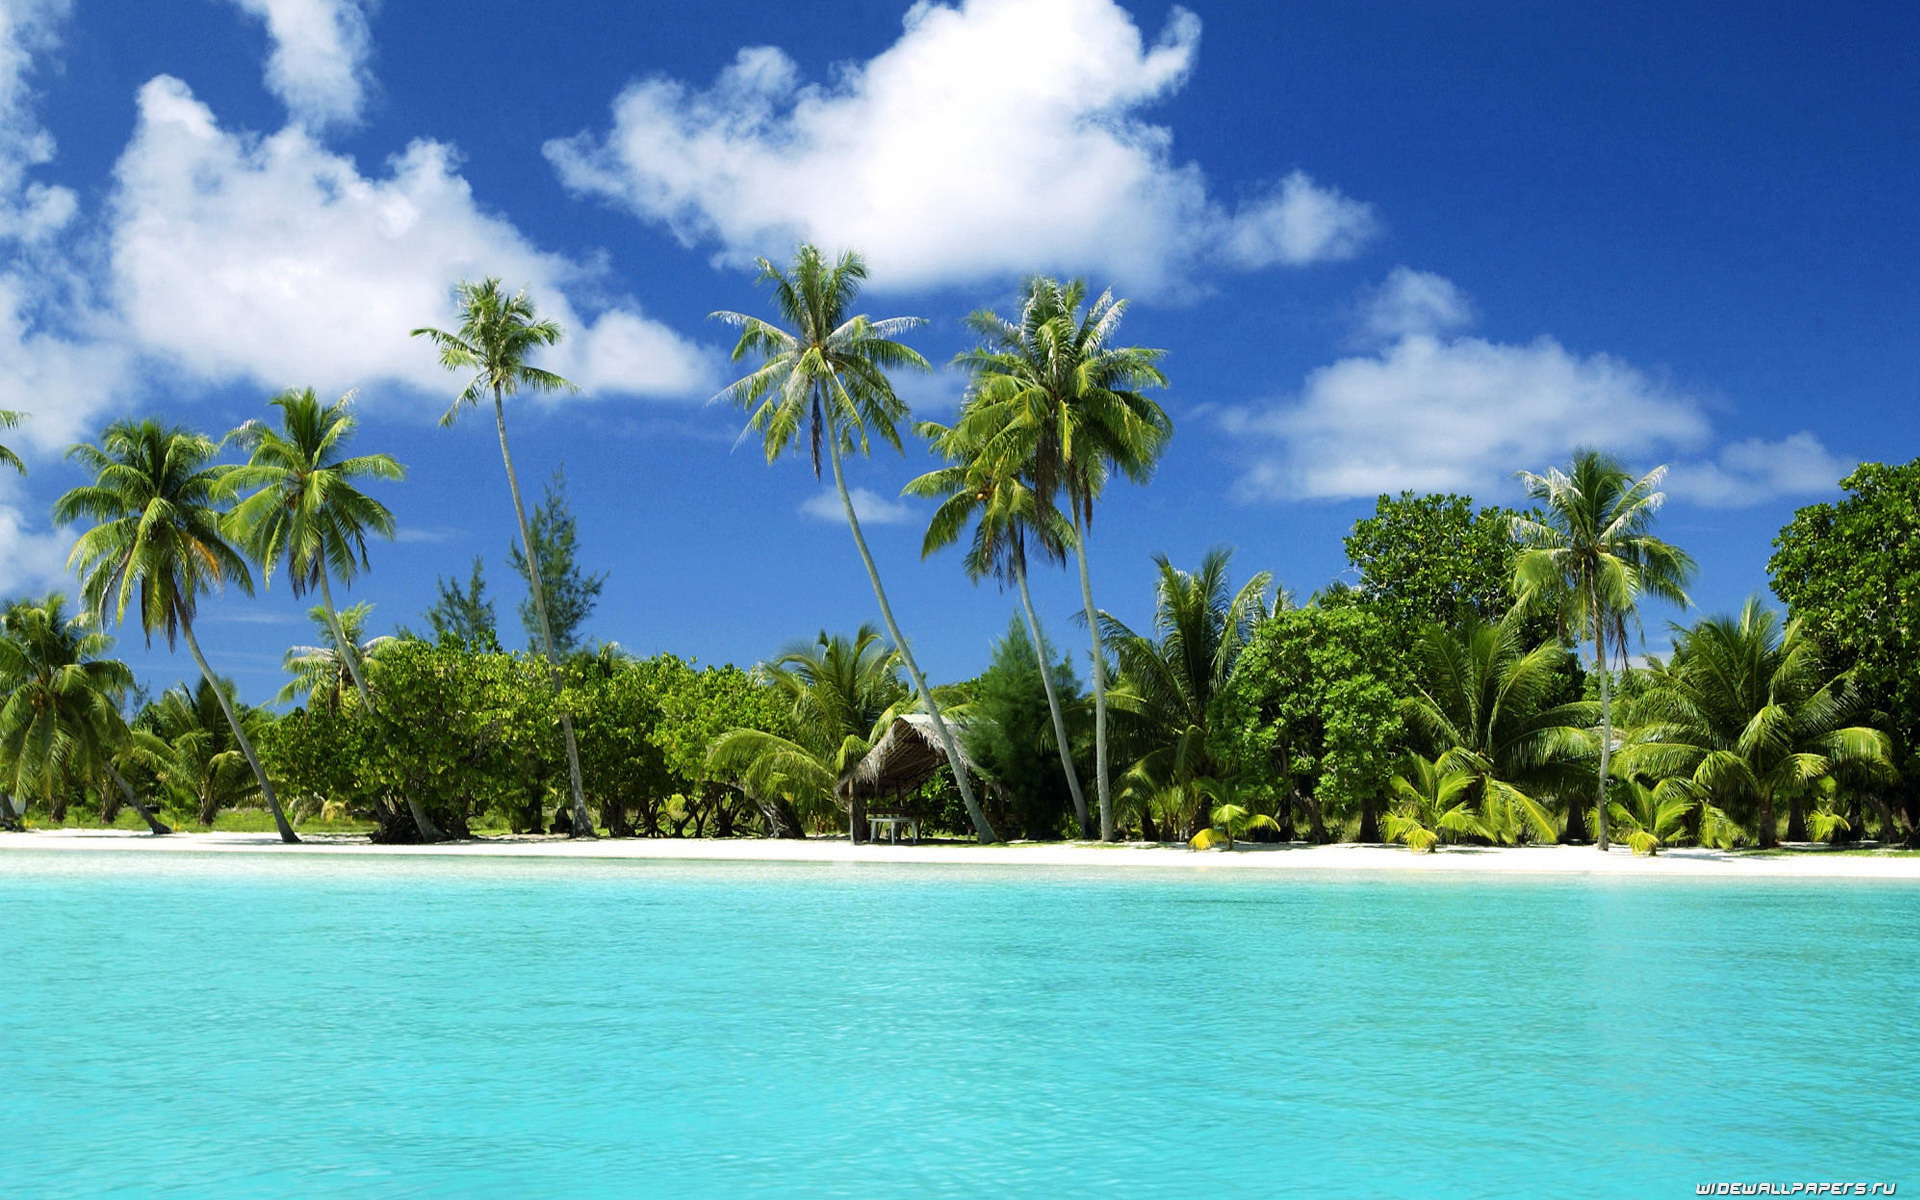 ocean, clouds, nature, palm trees, beaches - desktop wallpaper